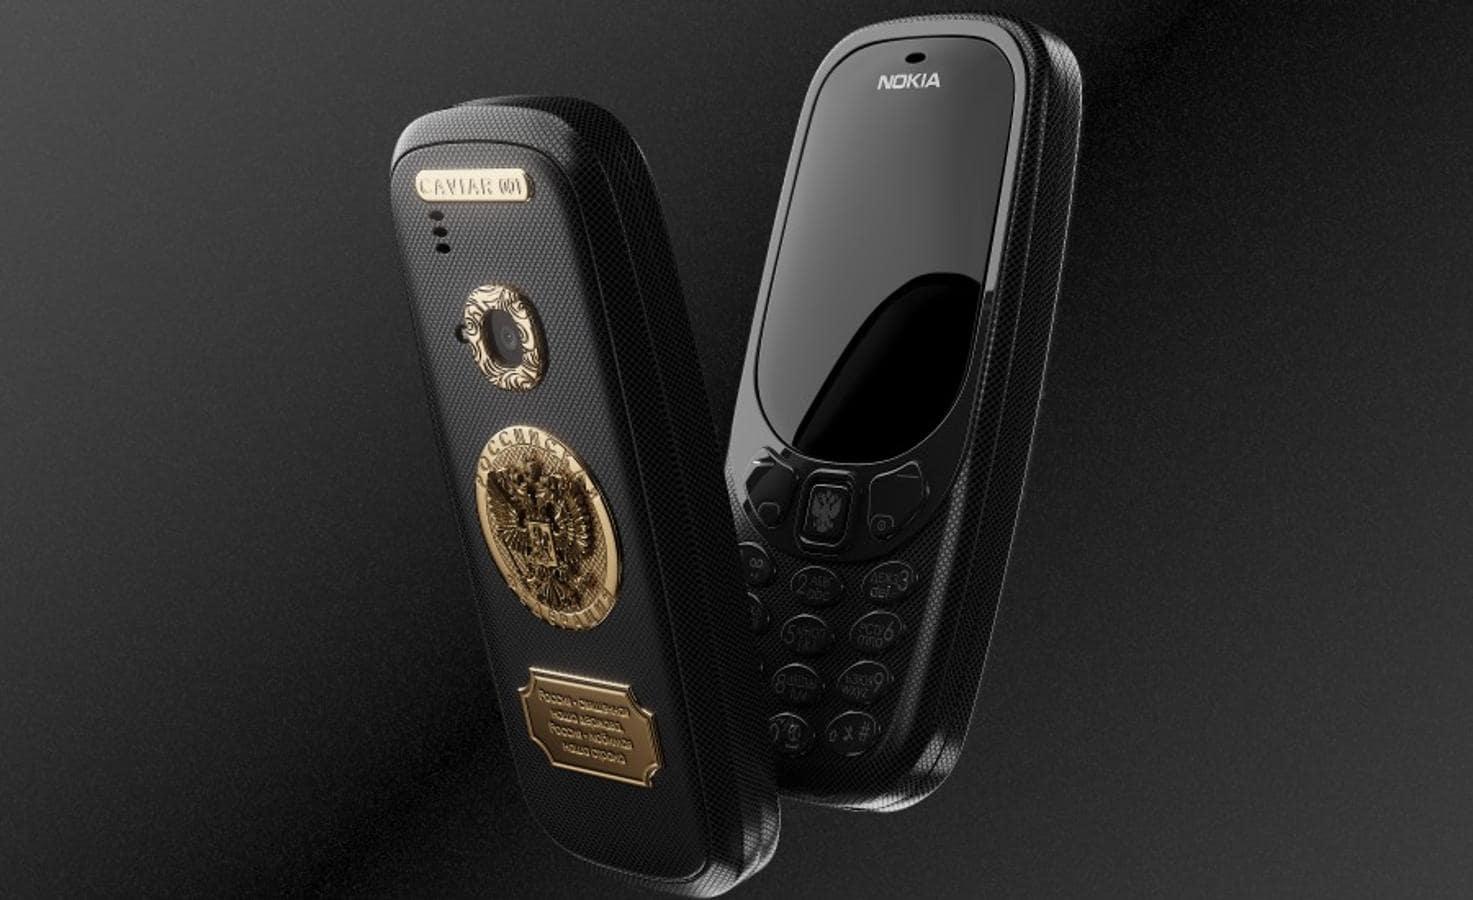 Nokia 3310. Es, probablemente, uno de los modelos de teléfono móvil más populares del mercado y de la historia, por eso los rusos han querido incorporarlo a su catálogo